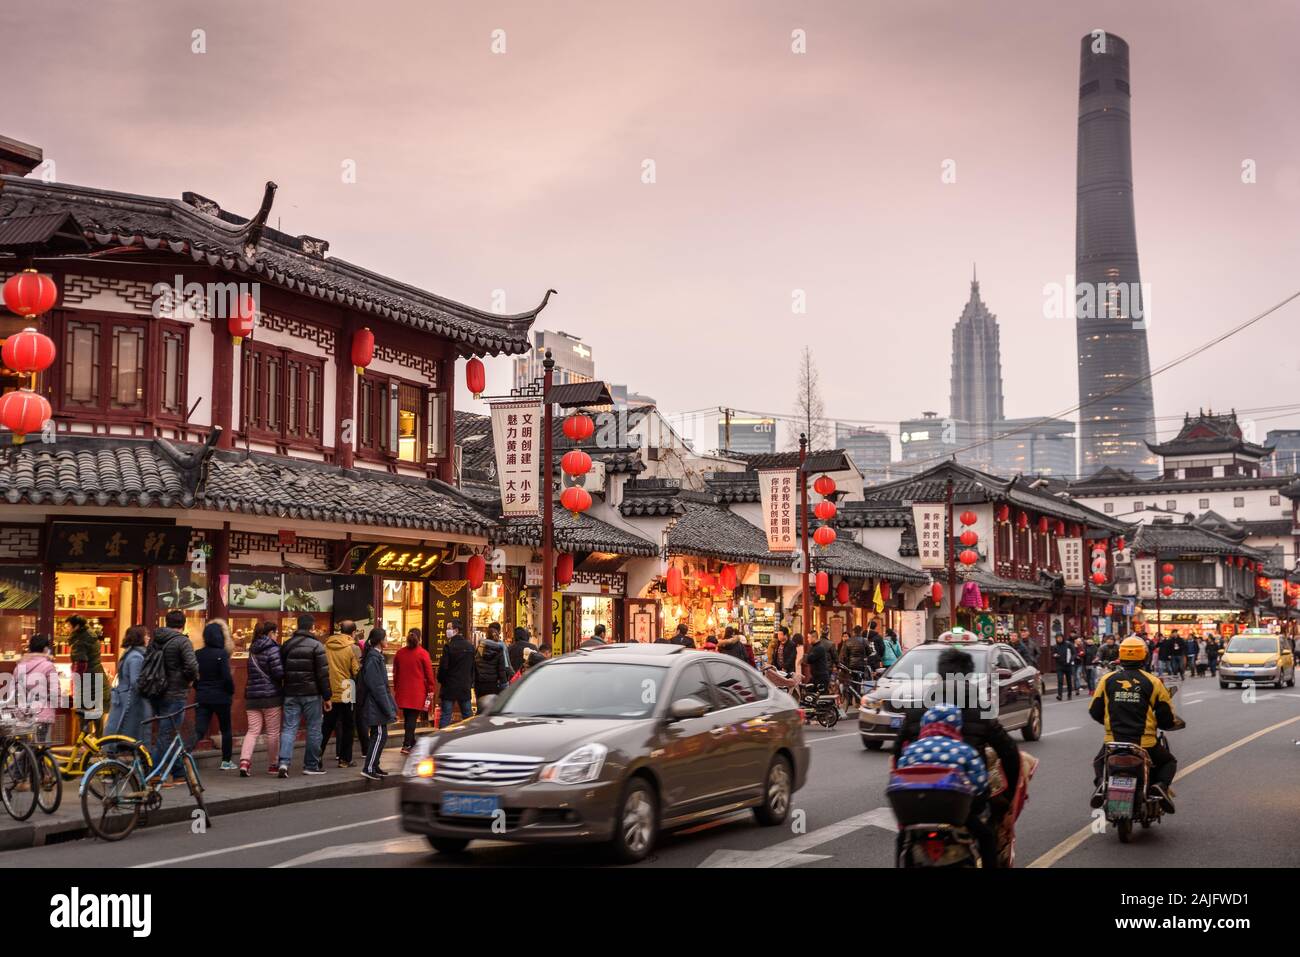 Shanghai, Chine: Scène de rue dans la vieille ville avec bâtiments asiatiques traditionnels, les gens de la circulation des voitures motos et tour de gratte-ciel de Shanghai Banque D'Images